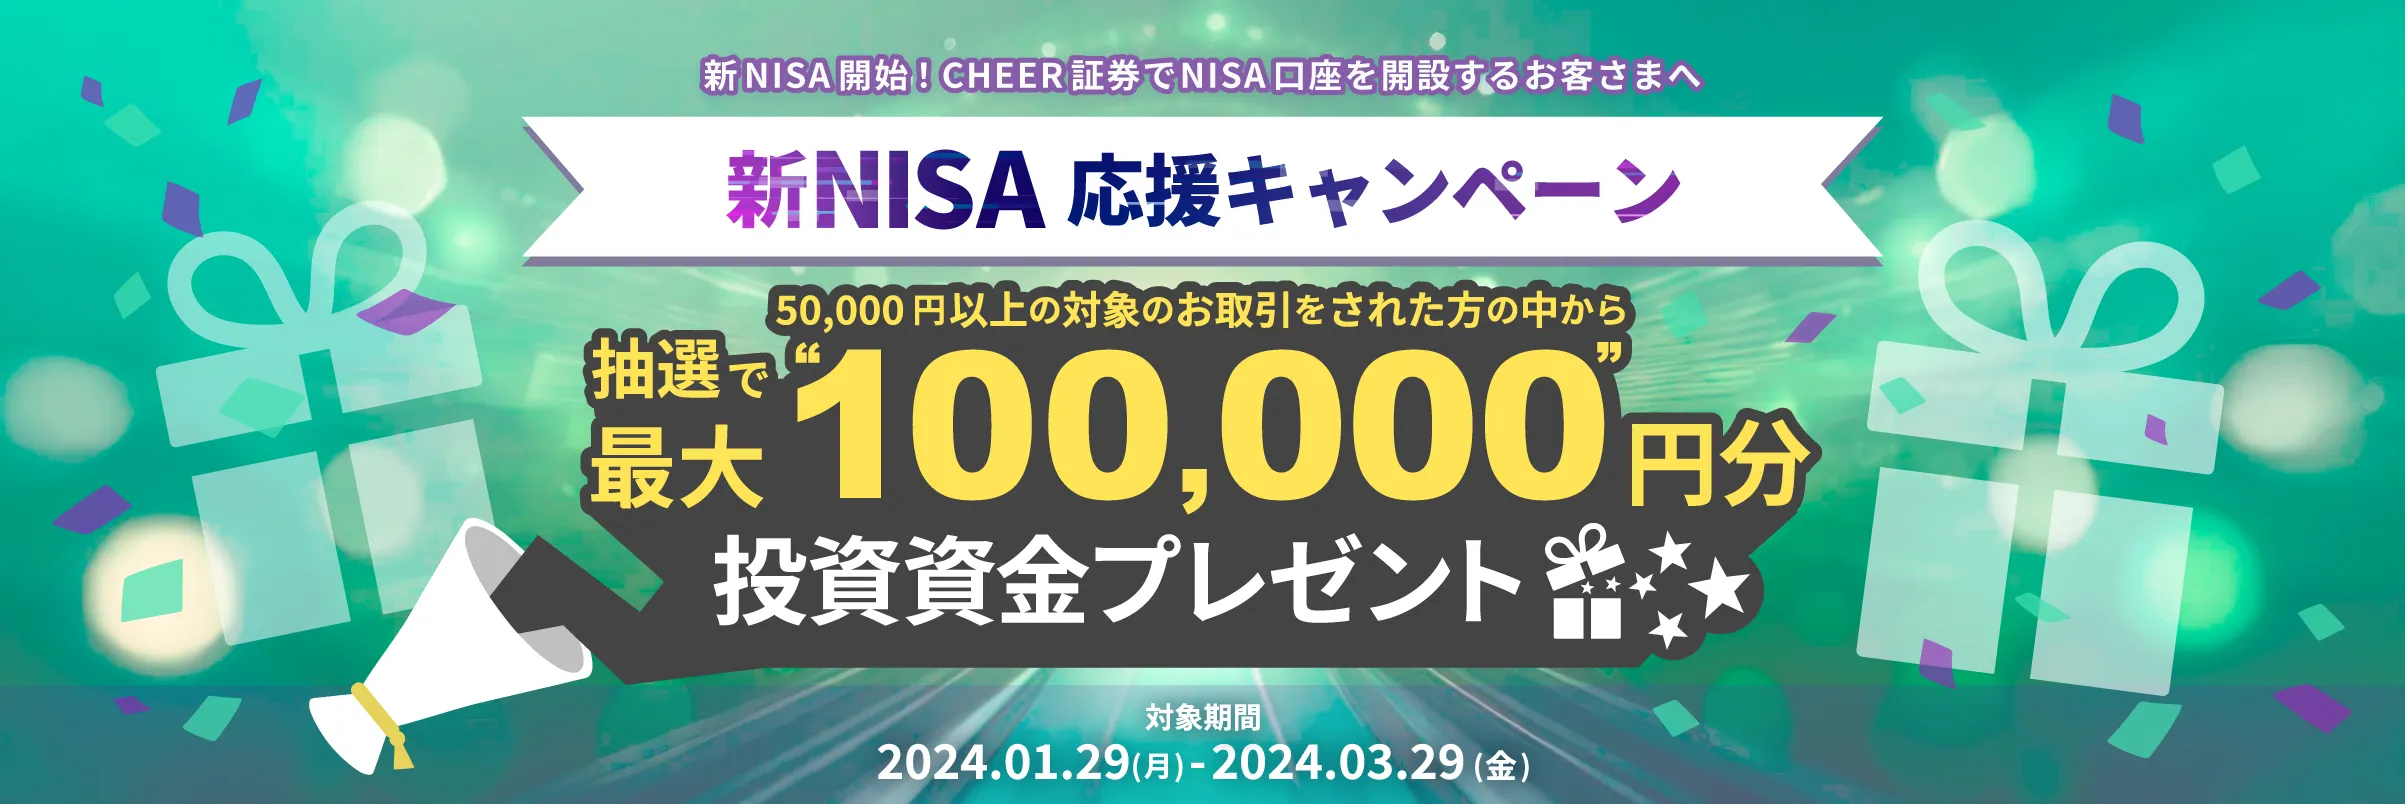 新NISA応援キャンペーン